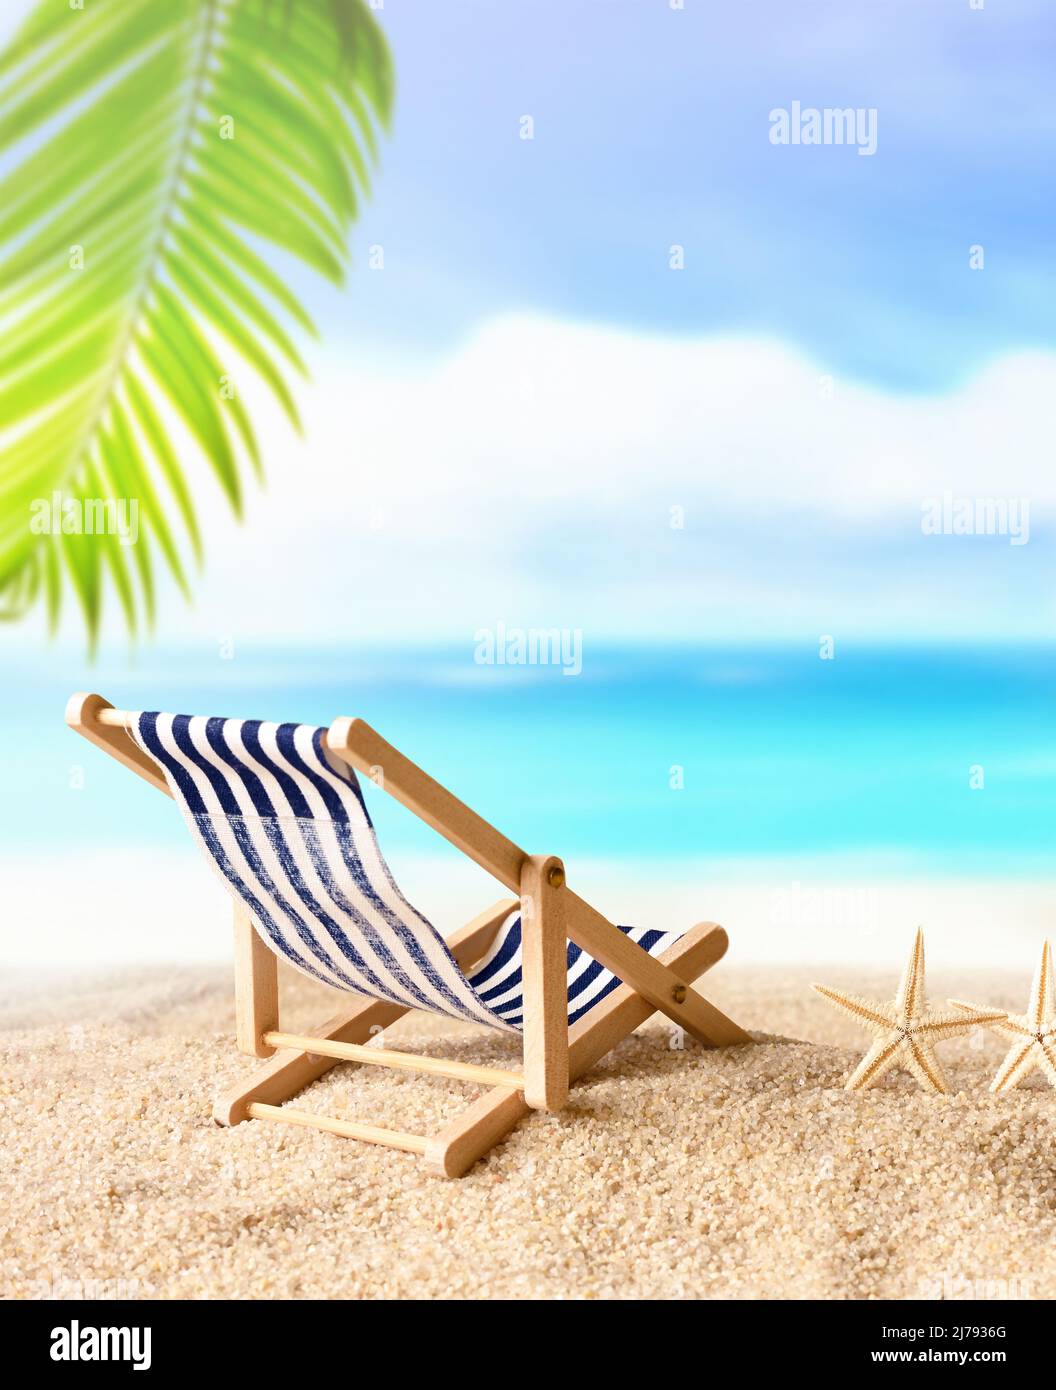 Urlaub Urlaub Hintergrund Konzept - Strand Liegestuhl unter Palmen am  Sommerstrand Stockfotografie - Alamy